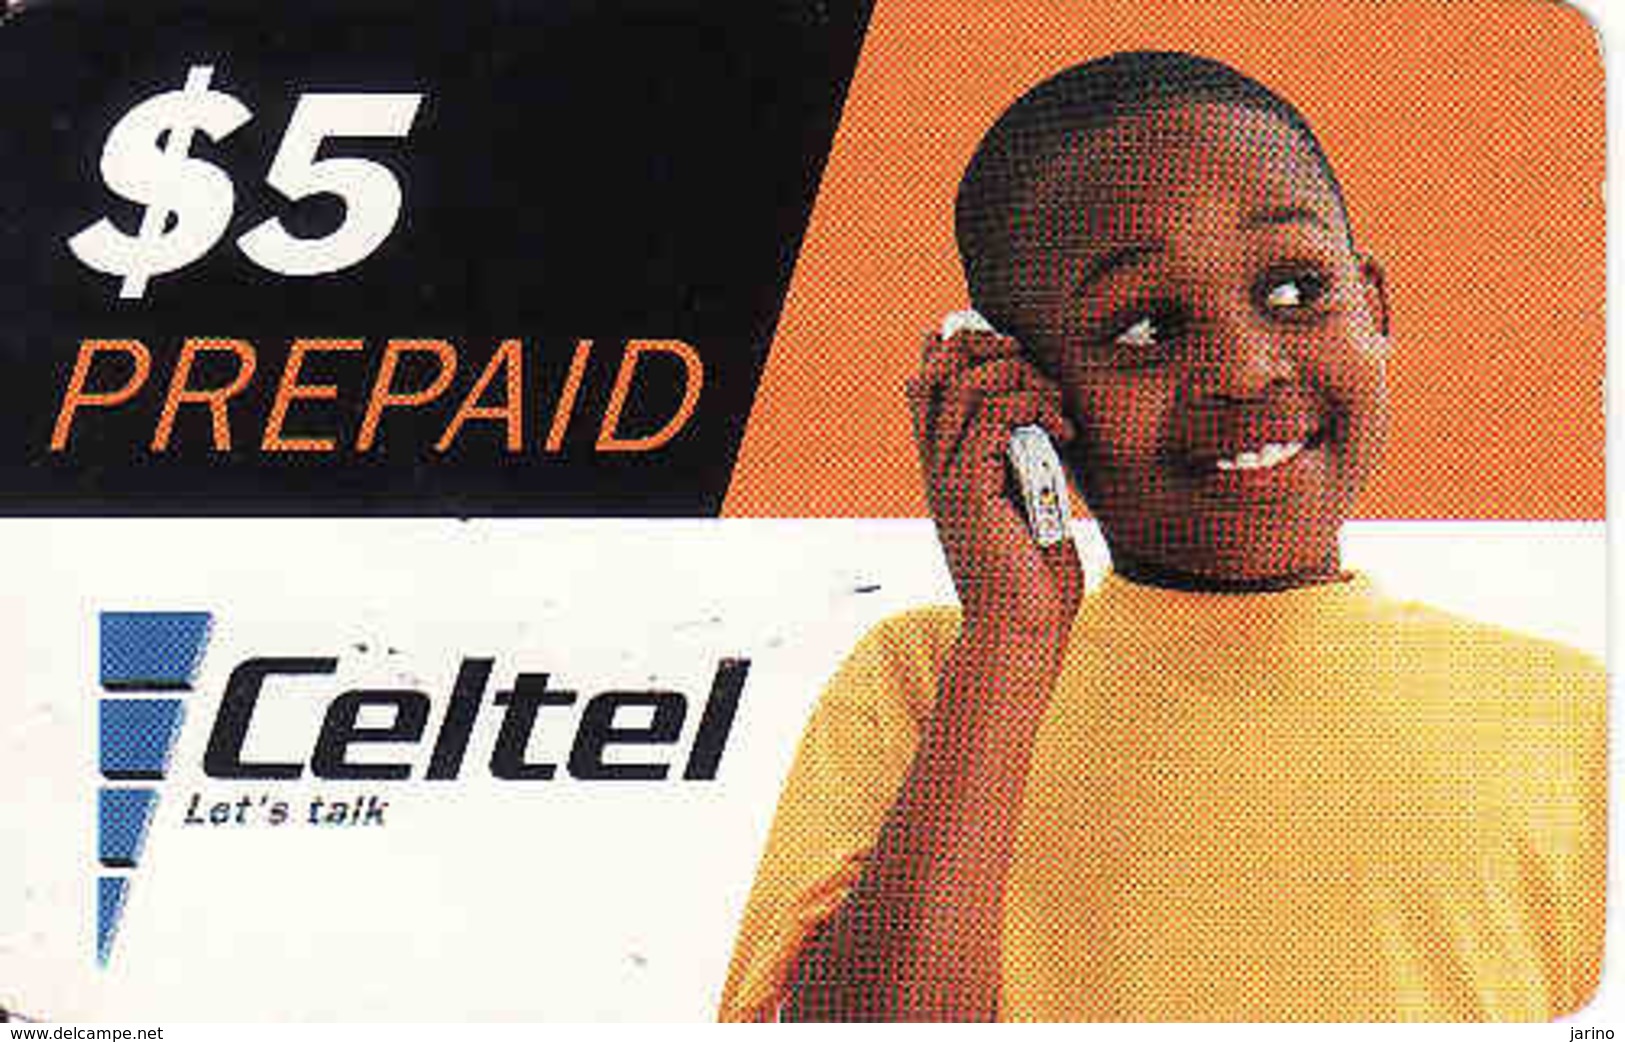 Zambia, Celtel Prepaid $5, Used - Sambia